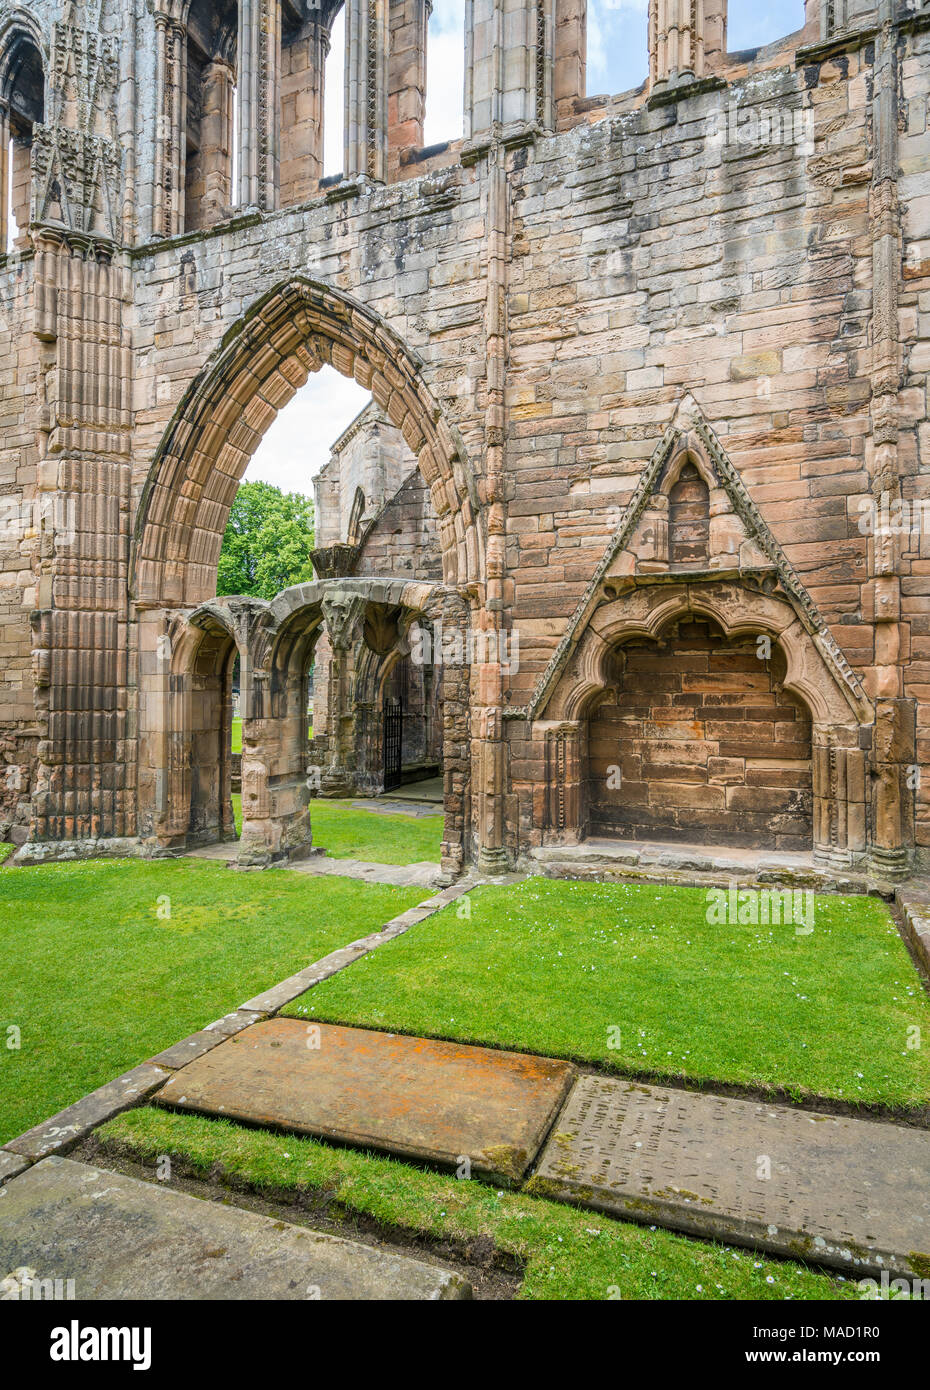 La Catedral de Elgin, ruina histórica en Elgin Moray, en el noreste de Escocia Foto de stock